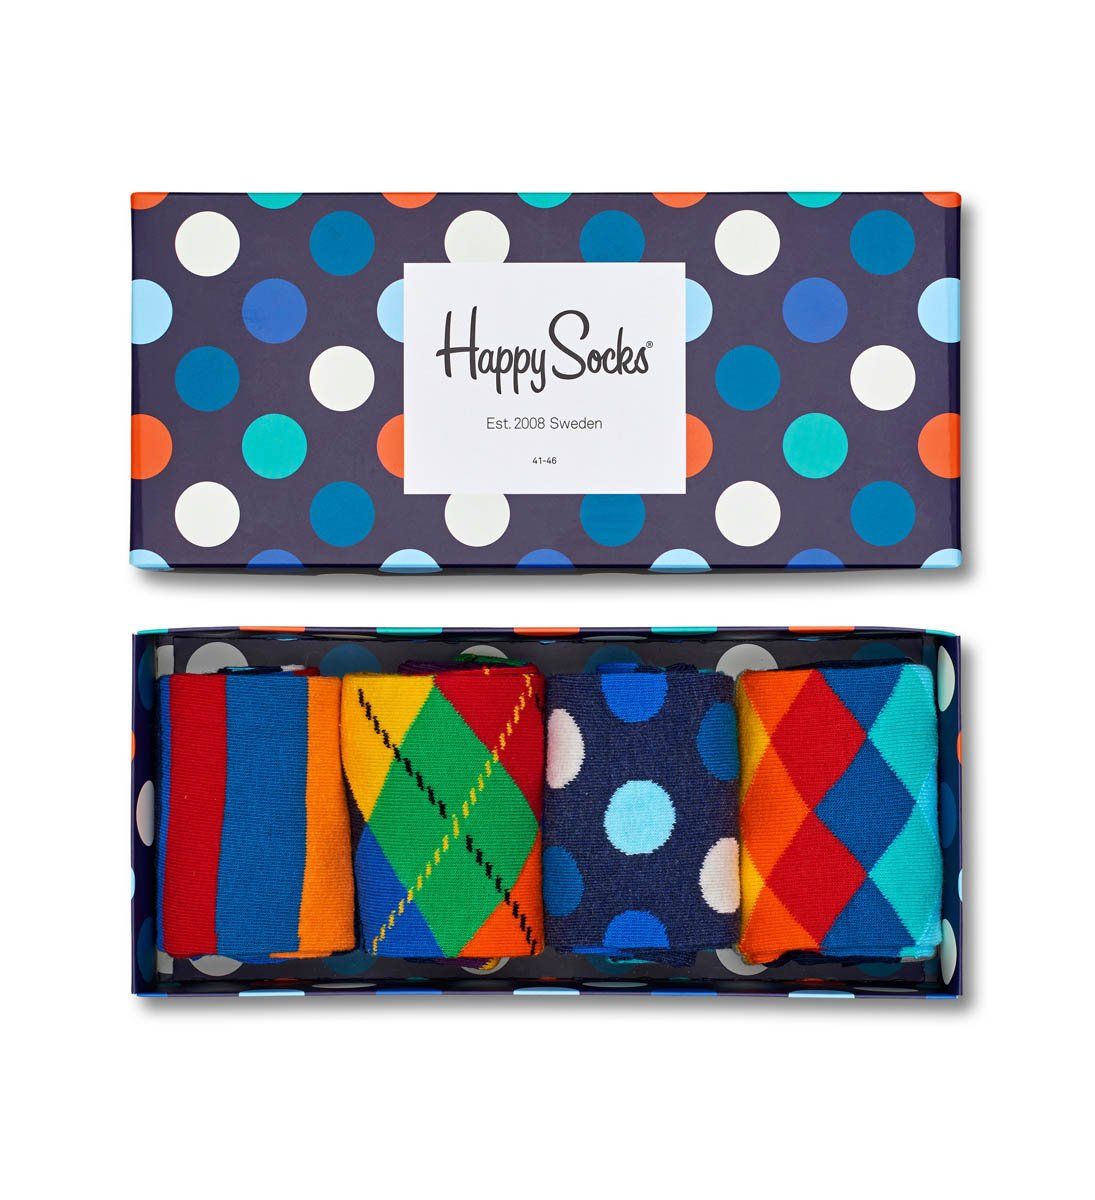 Подарочный набор ярких носков 4-Pack Multi-color Socks Gift Set. В наборе 4 пары яркой расцветки.